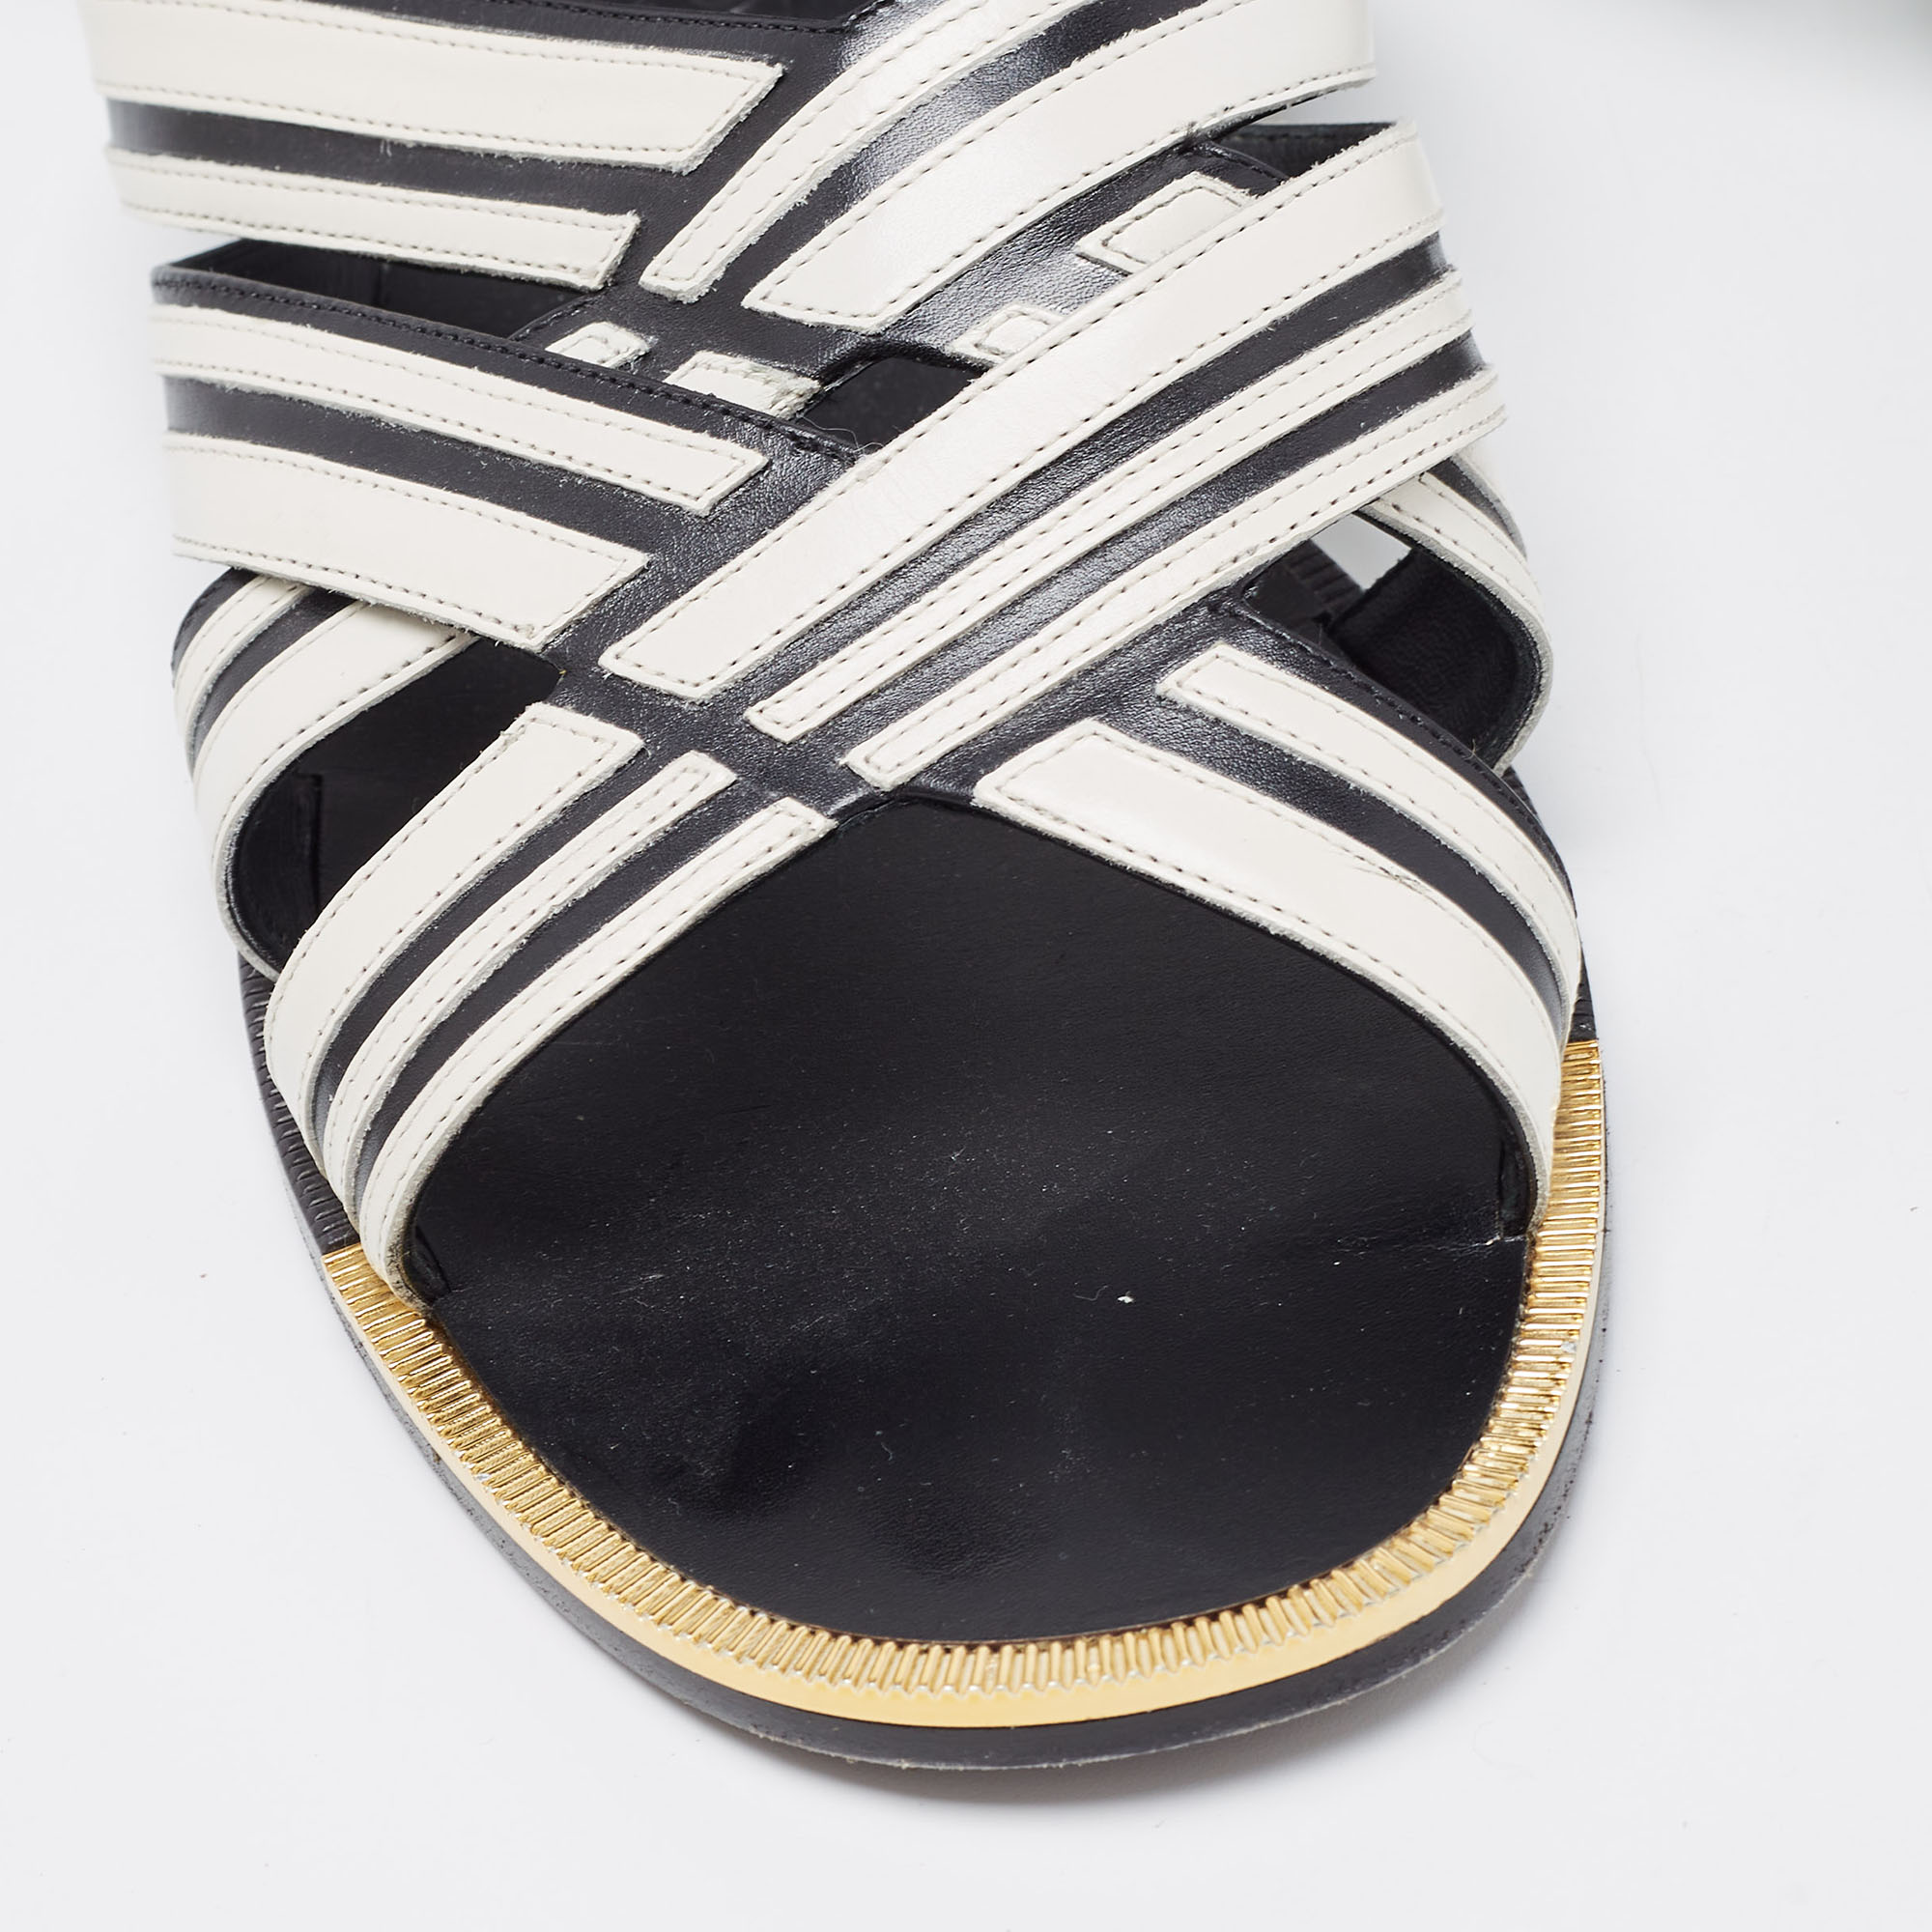 Salvatore Ferragamo Black/White Leather Ankle Strap Sandals Size 40